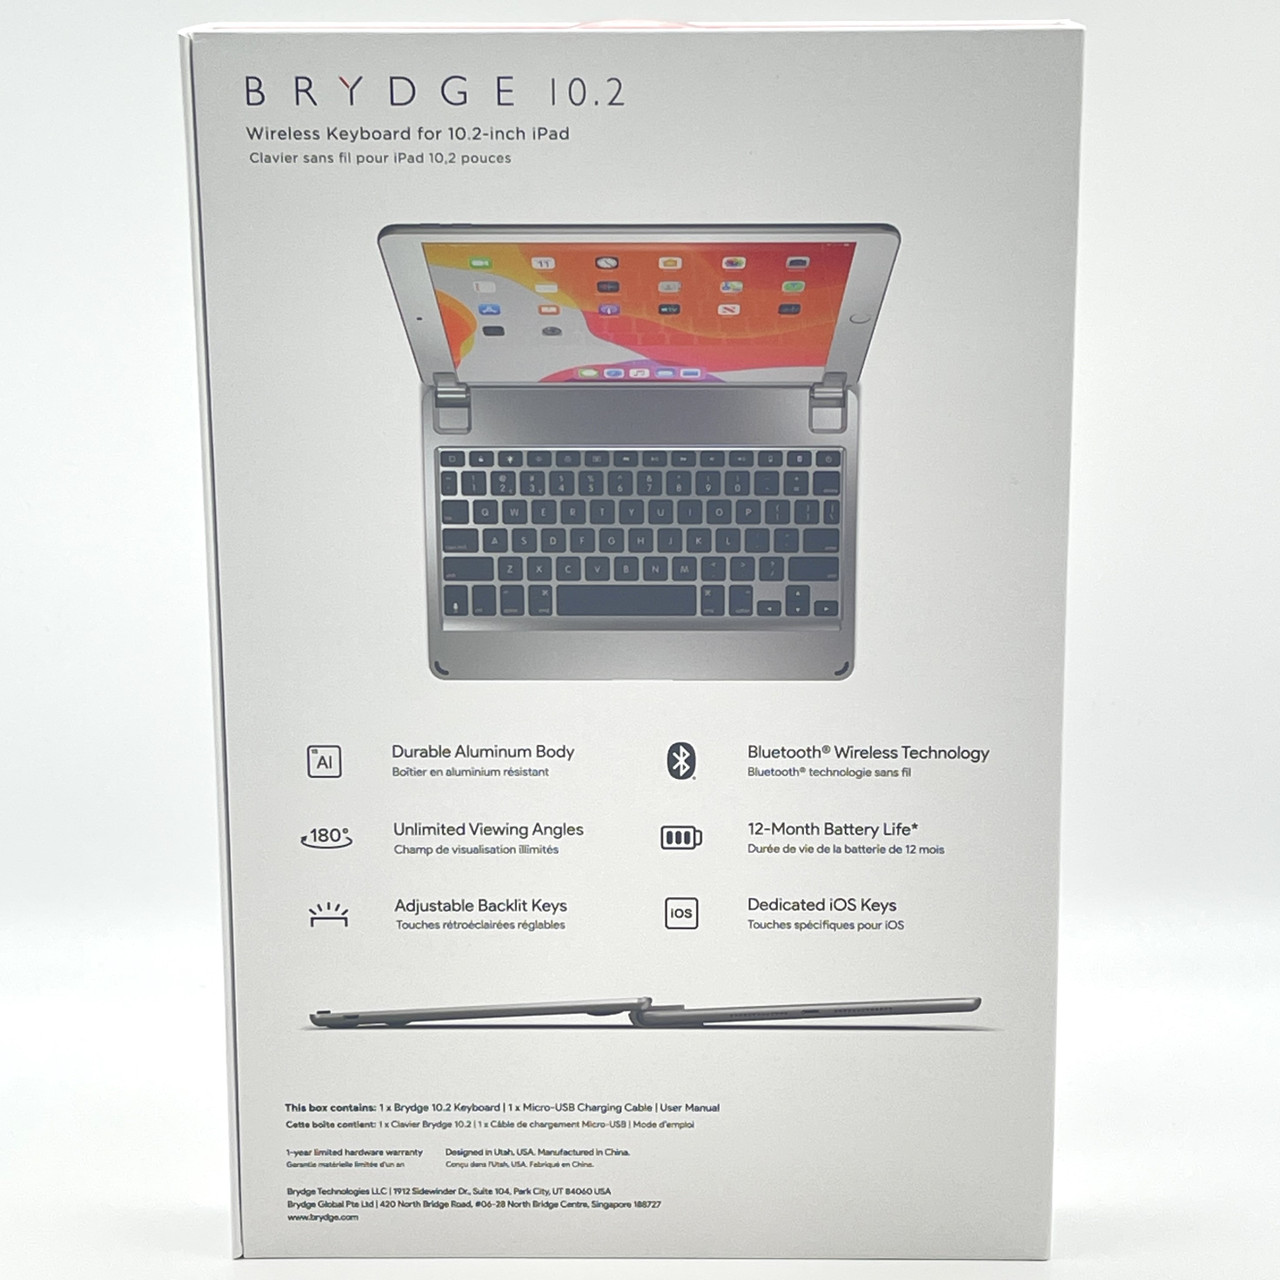 BRYDGE APPLE iPAD 10.2" WIRELESS KEYBOARD BRY80012 SILVER - NEW OPEN BOX